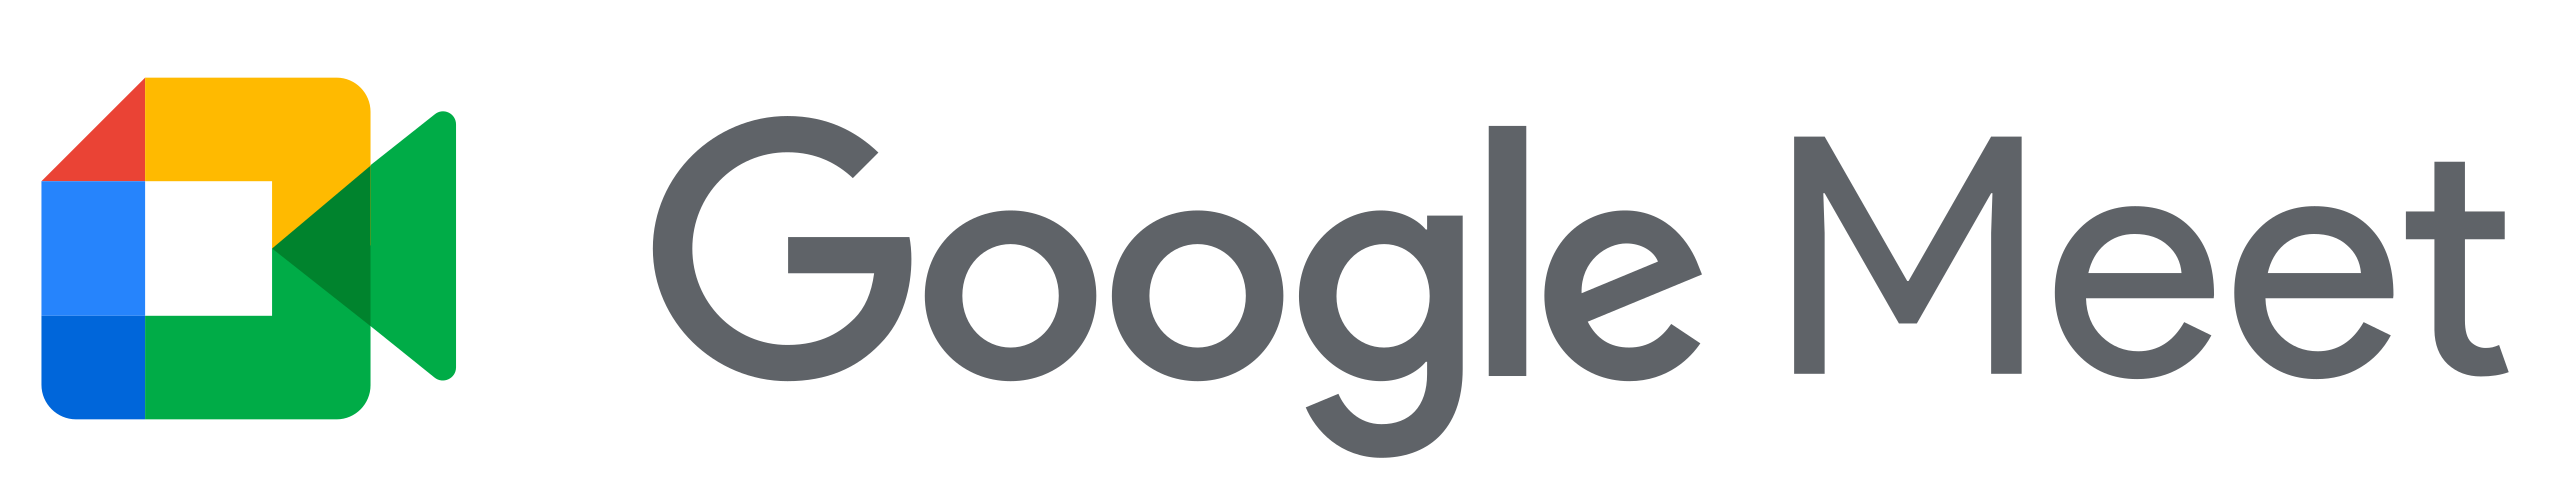 2560px-Google_Meet_text_logo_(2020).svg